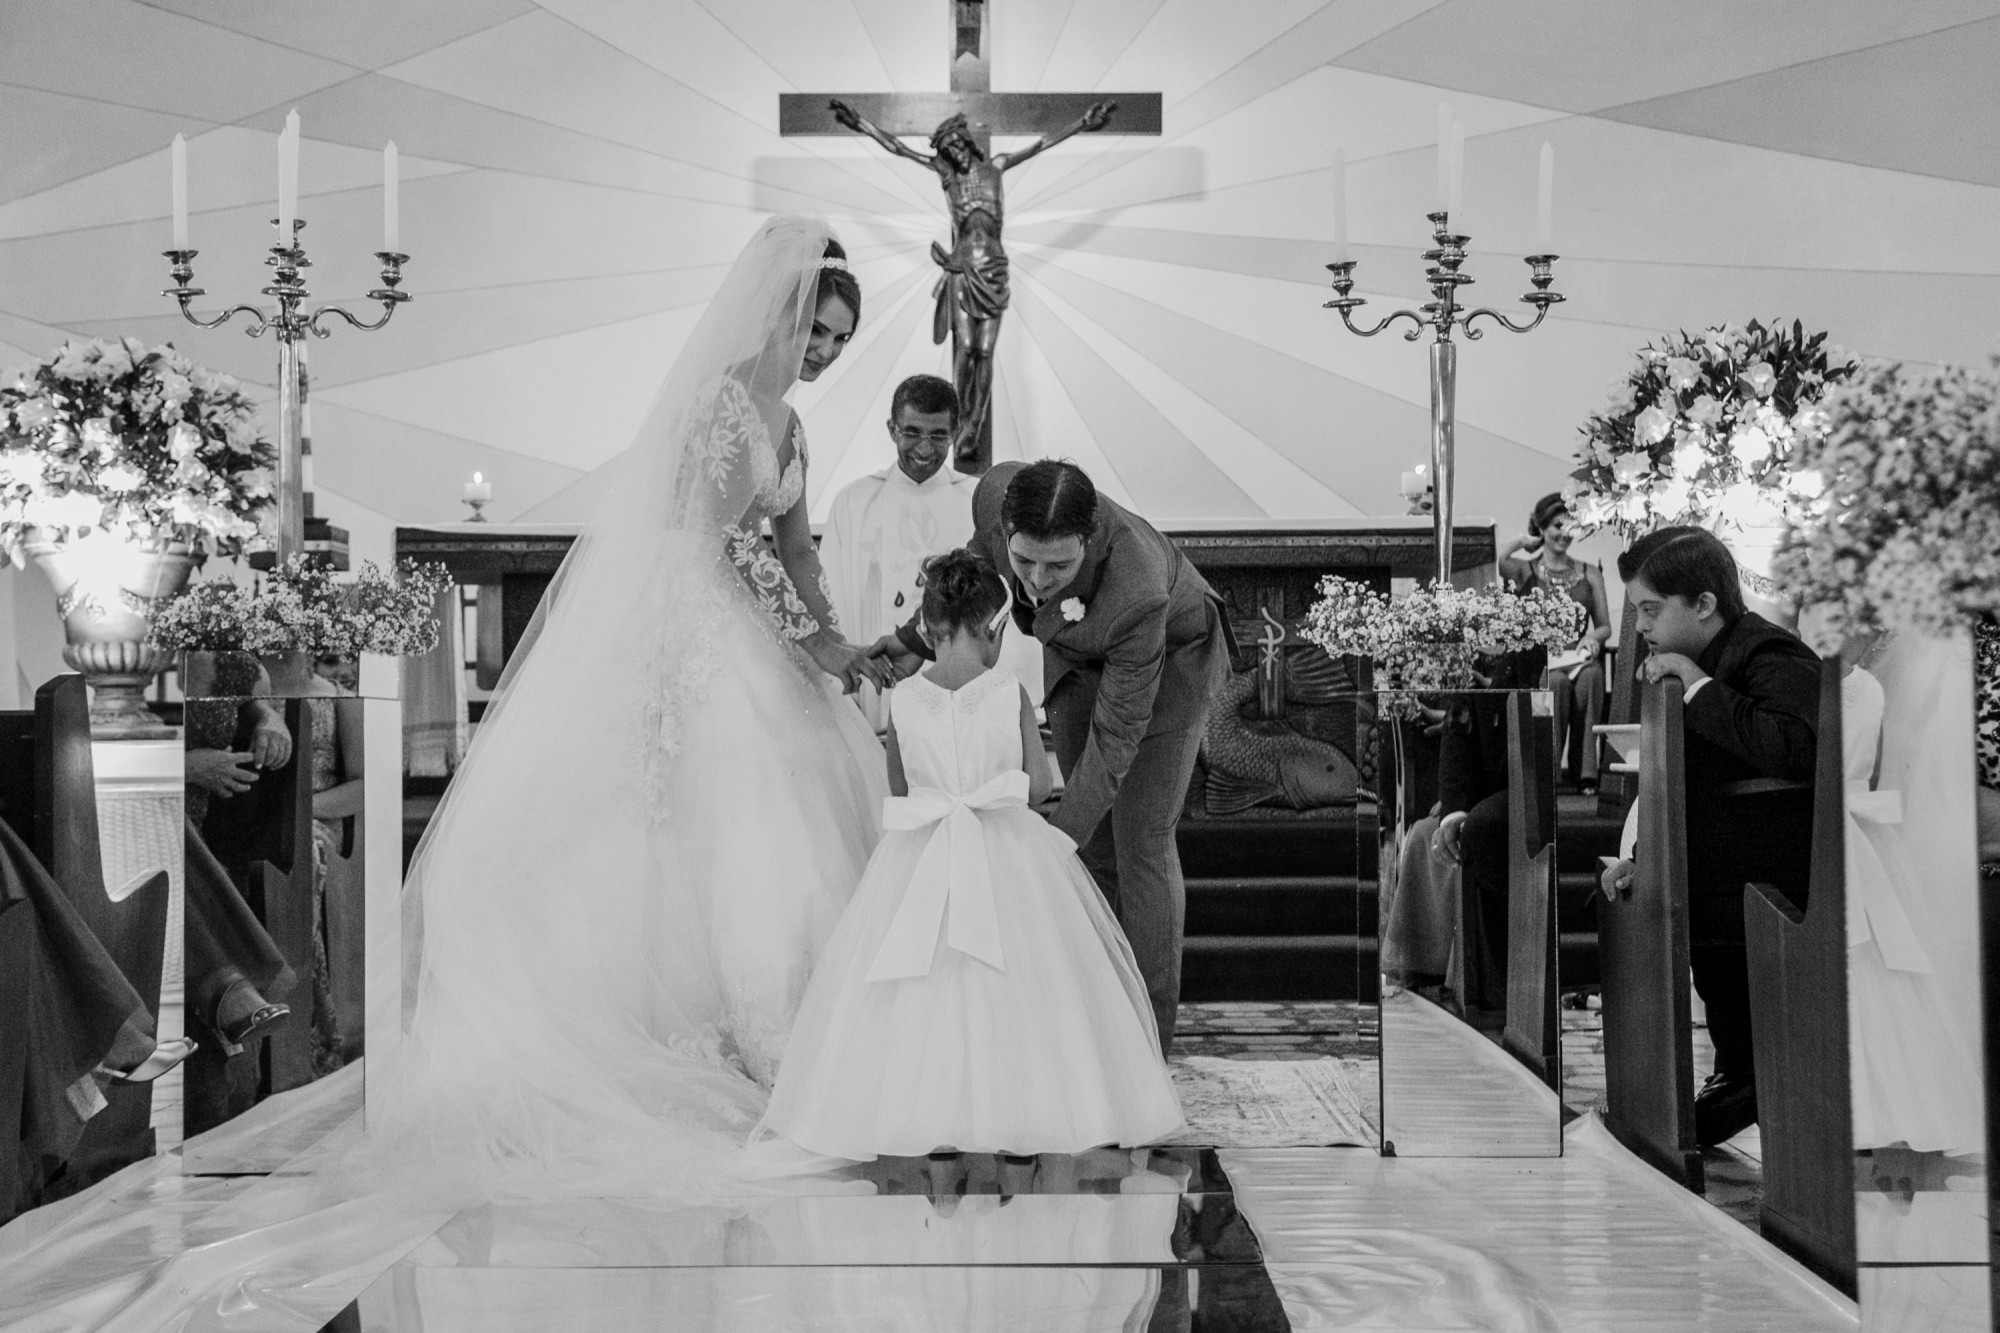 Casamento Anderson e Juliana Fioreli em Iporã Paraná - por Lorran Souza e Léia Sotile - Fotografos de casamentos - JA-1654